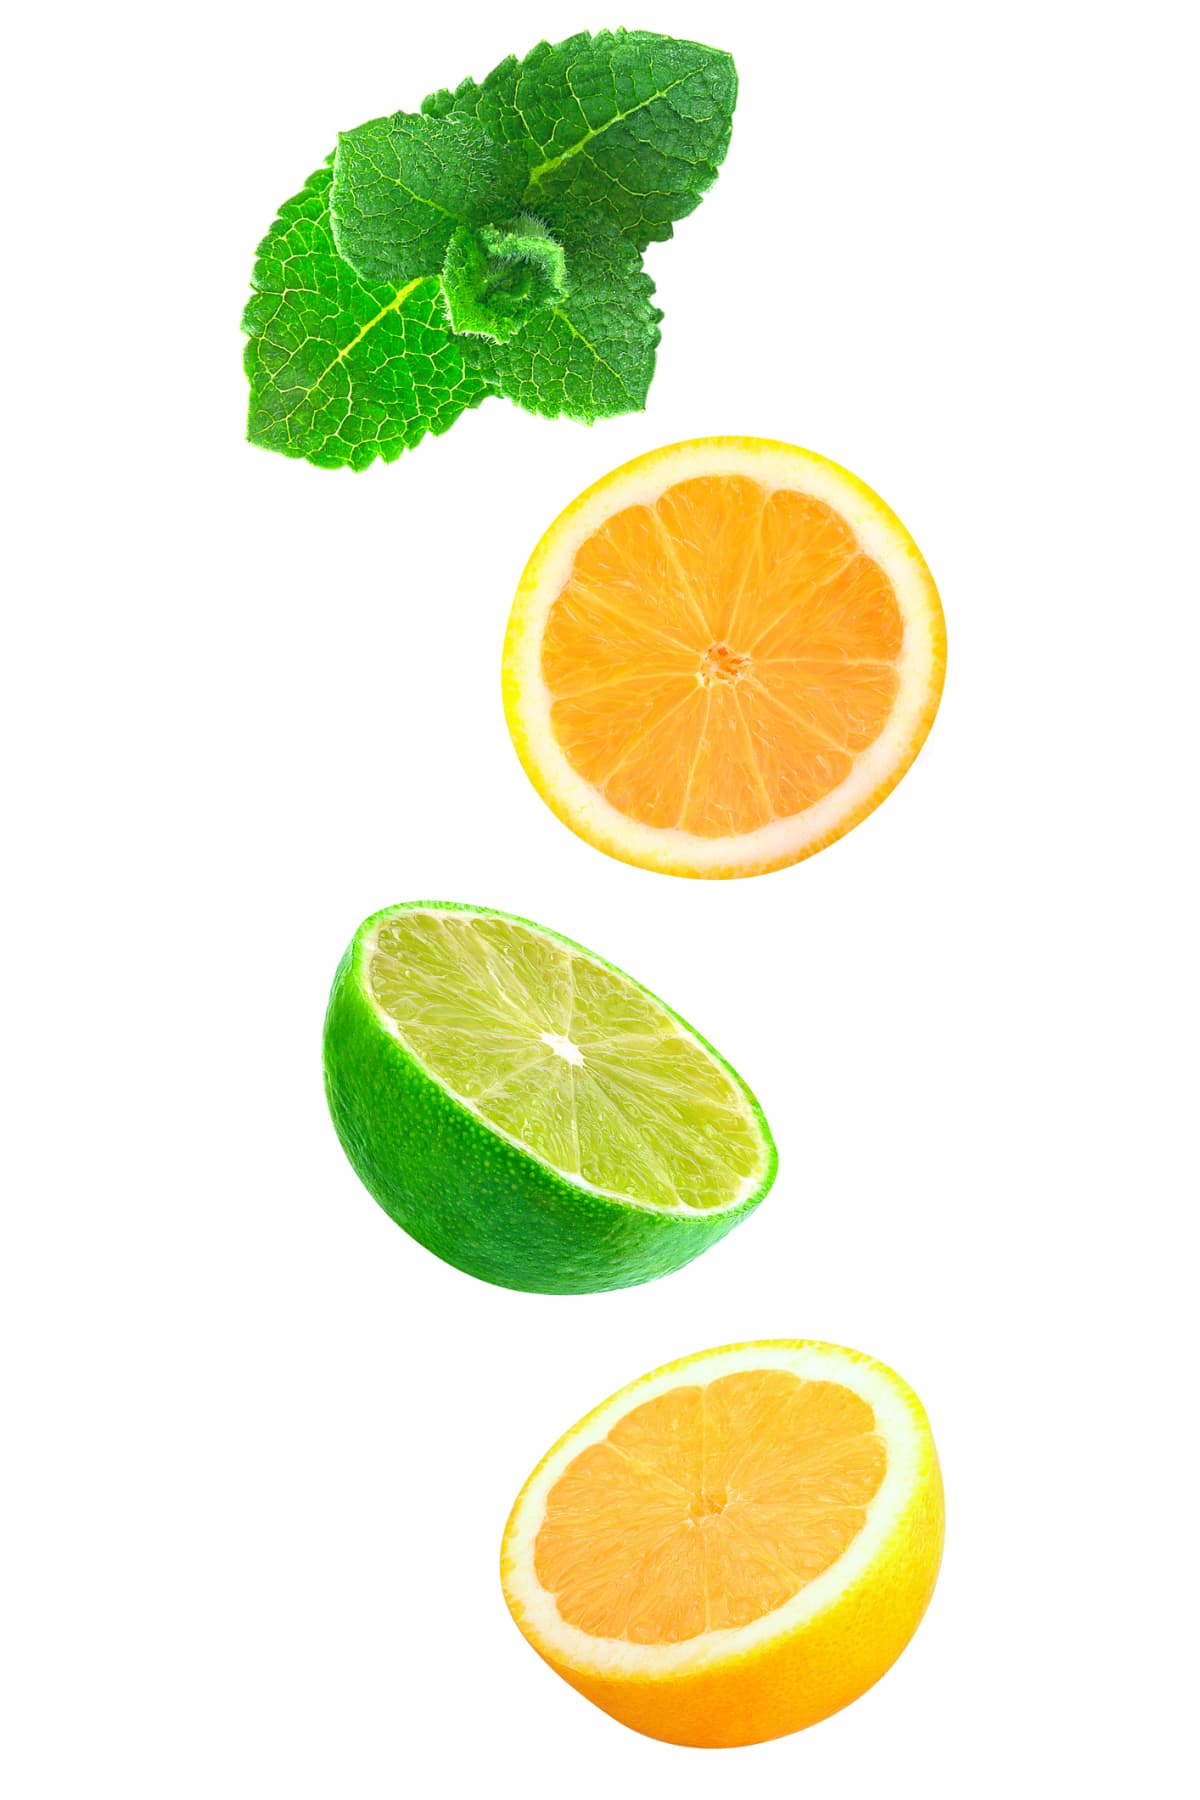 Lemon halves, lime half, and green leaf garnish